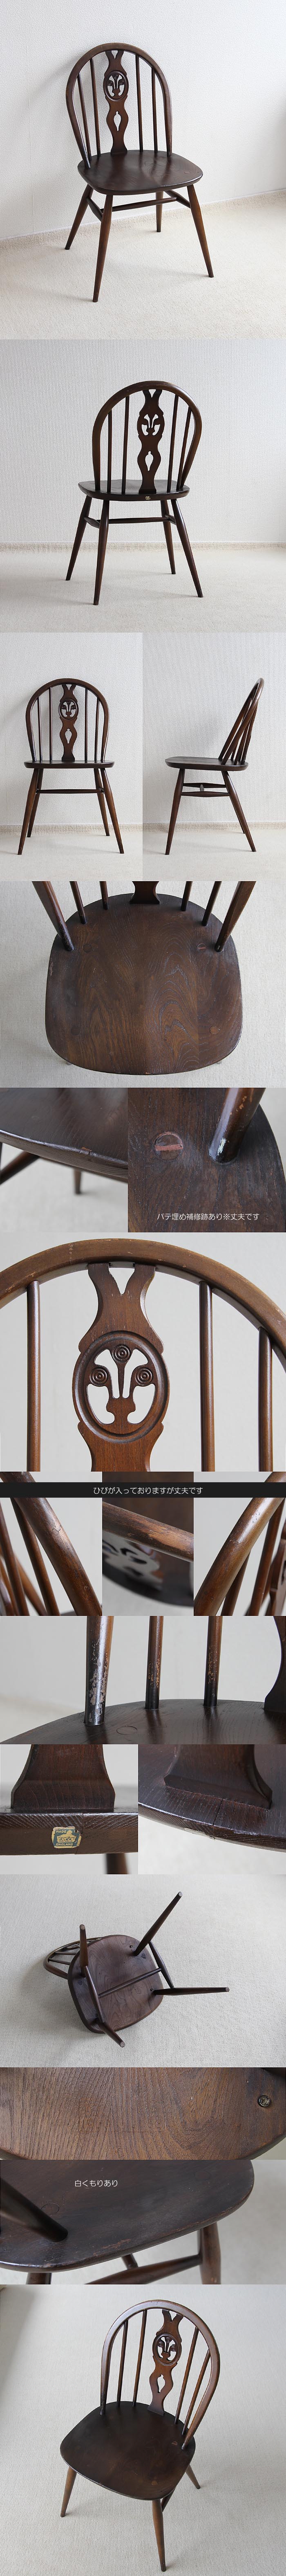 イギリス アンティーク アーコール シスルバックチェア 木製椅子 英国 インテリア 家具「ercol」V-656